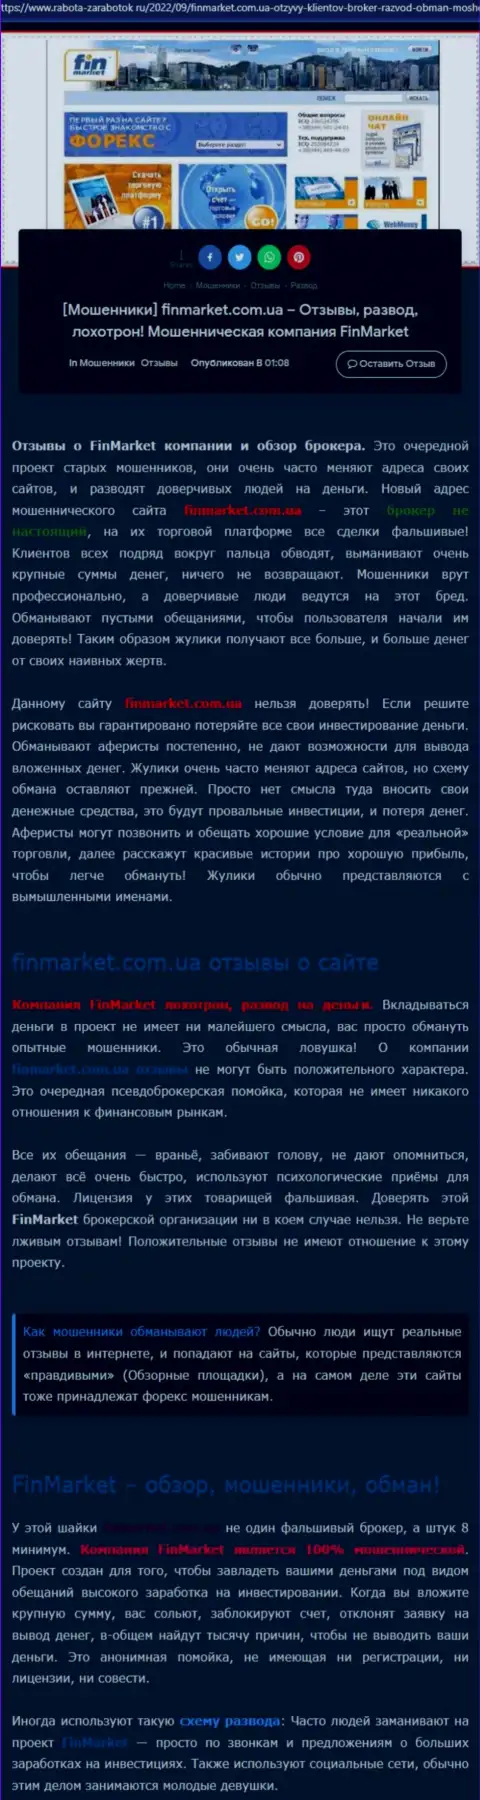 Разбор действий организации FinMarket - обувают жестко (обзор деятельности)